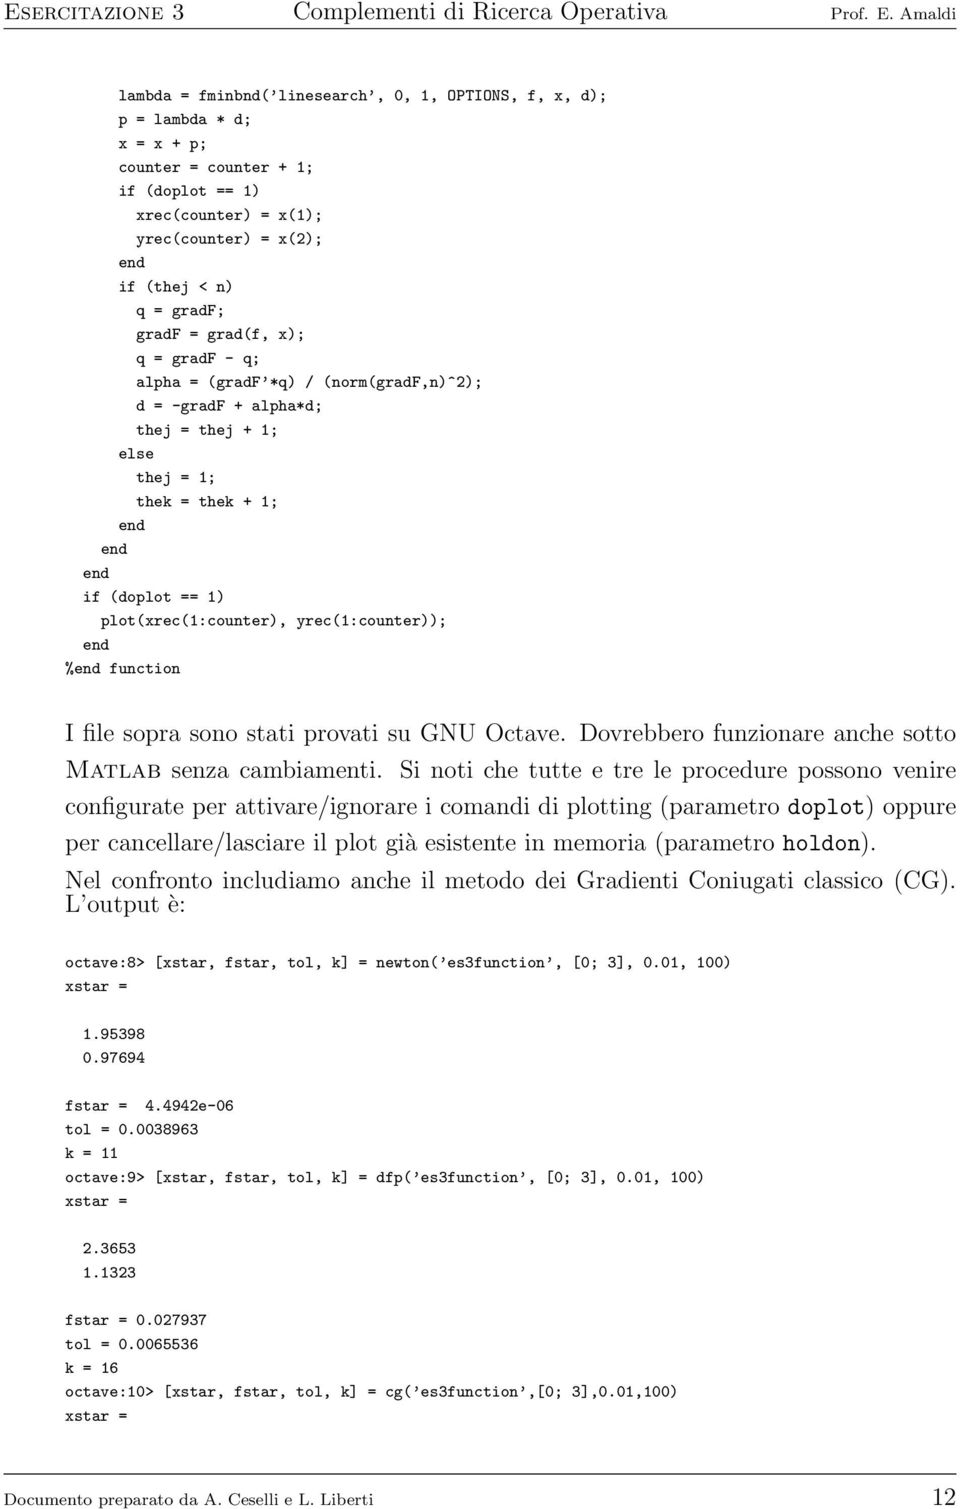 function I file sopra sono stati provati su GNU Octave. Dovrebbero funzionare anche sotto Matlab senza cambiamenti.